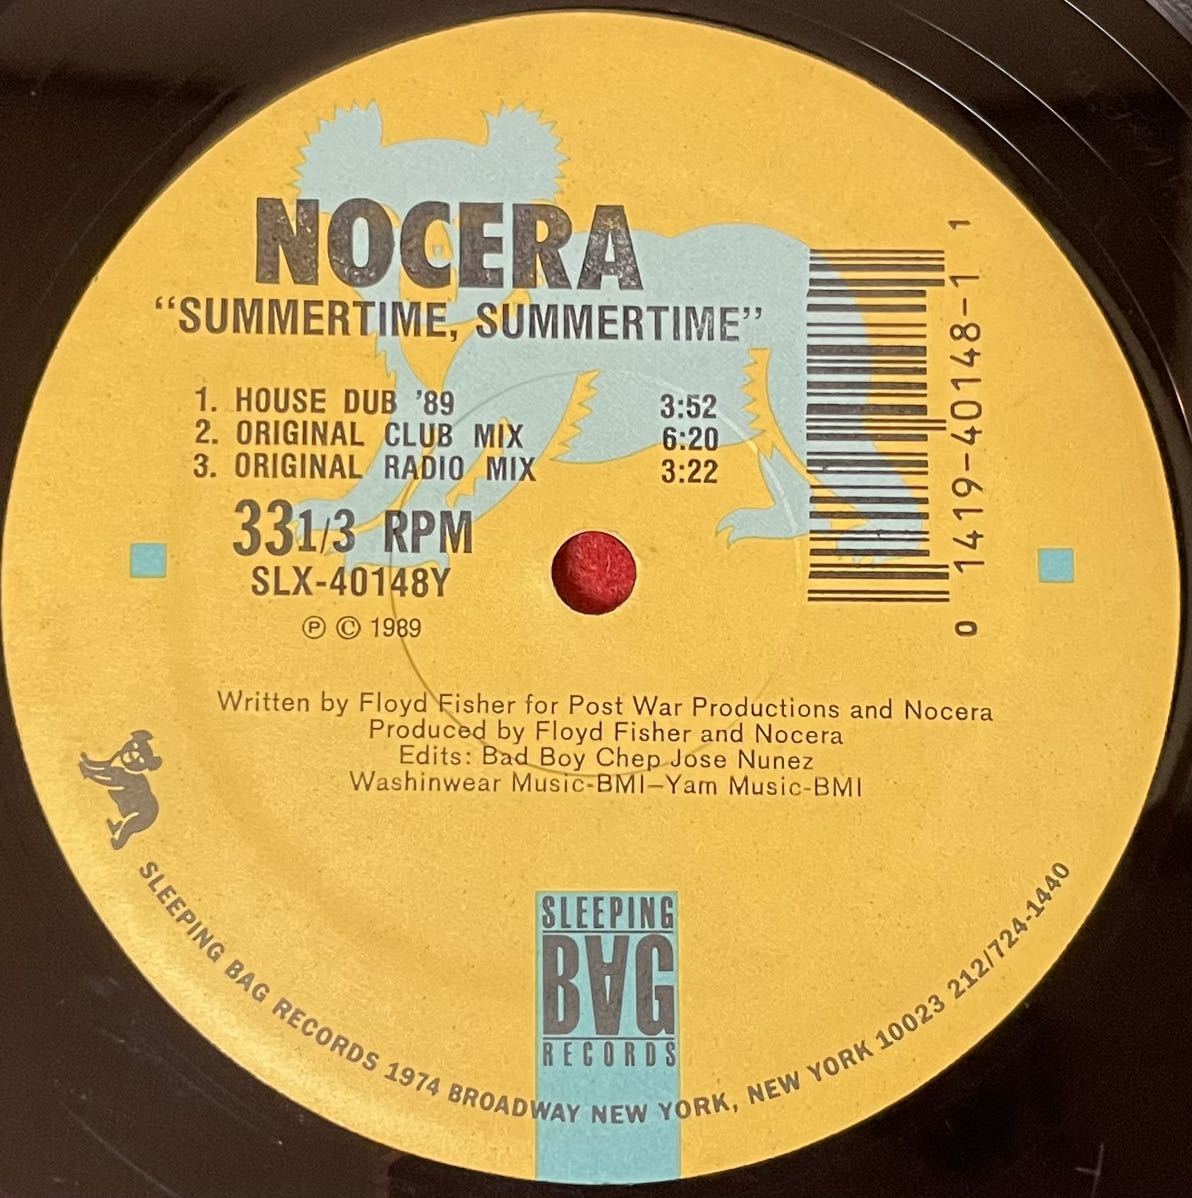 Nocera / Summertime, Summertime 12inch盤その他にもプロモーション盤 レア盤 人気レコード 多数出品。の画像1